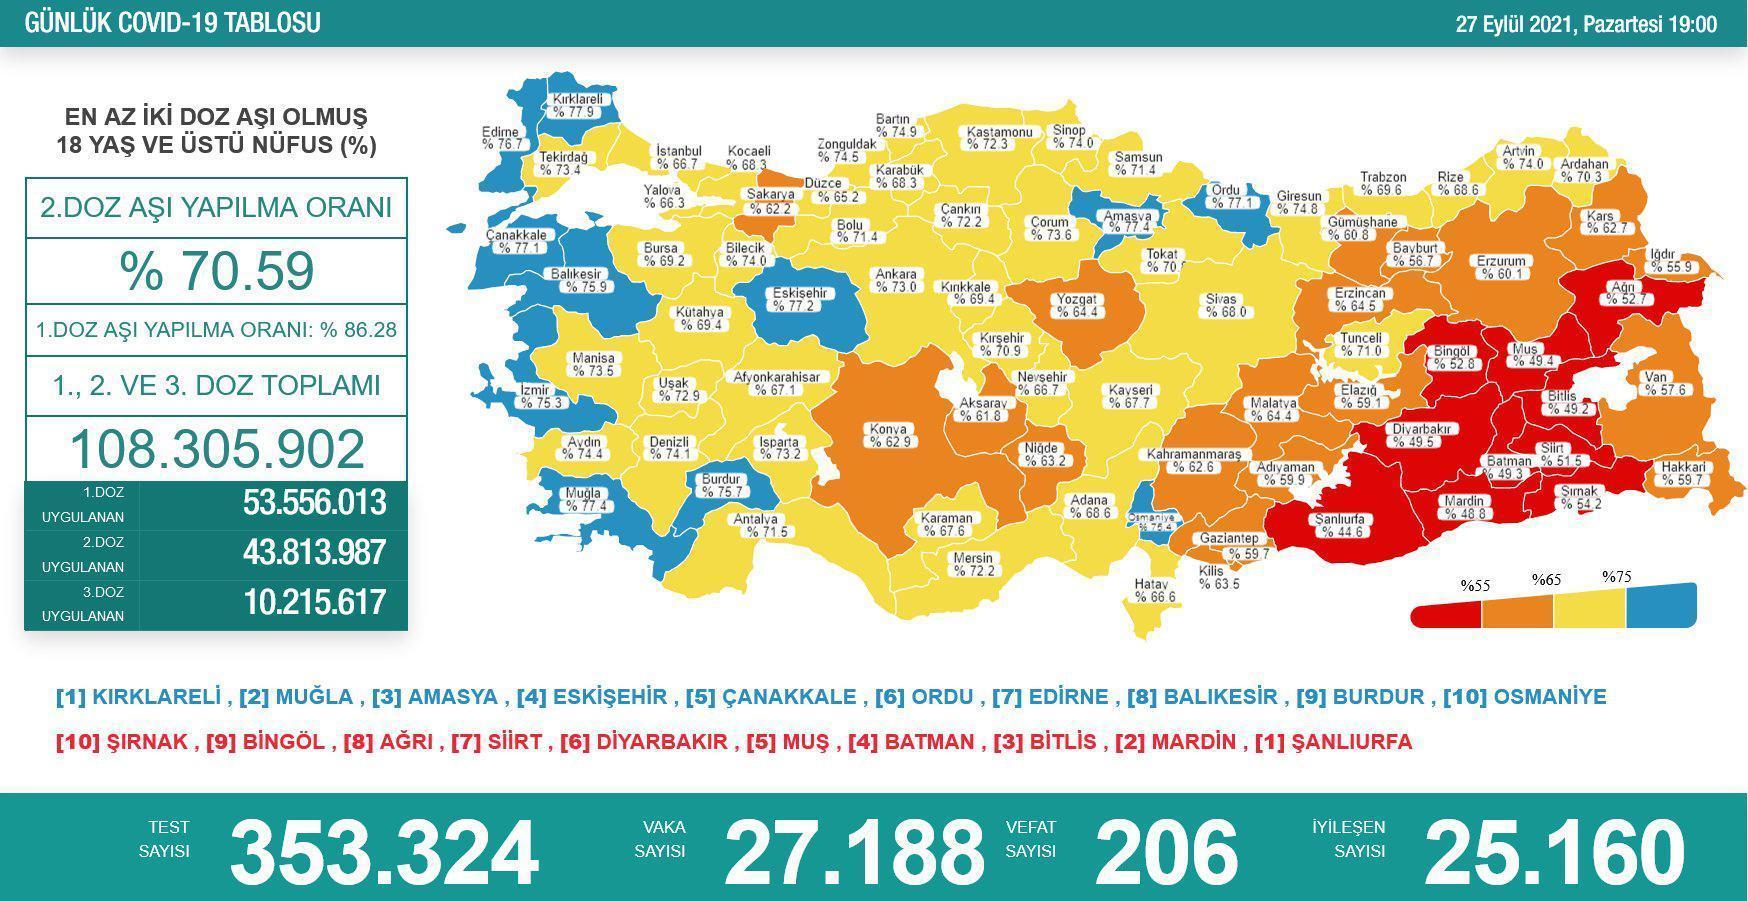 27 Eylül 2021 korona tablosu açıklandı İşte Türkiyedeki son vaka ve vefat sayısı